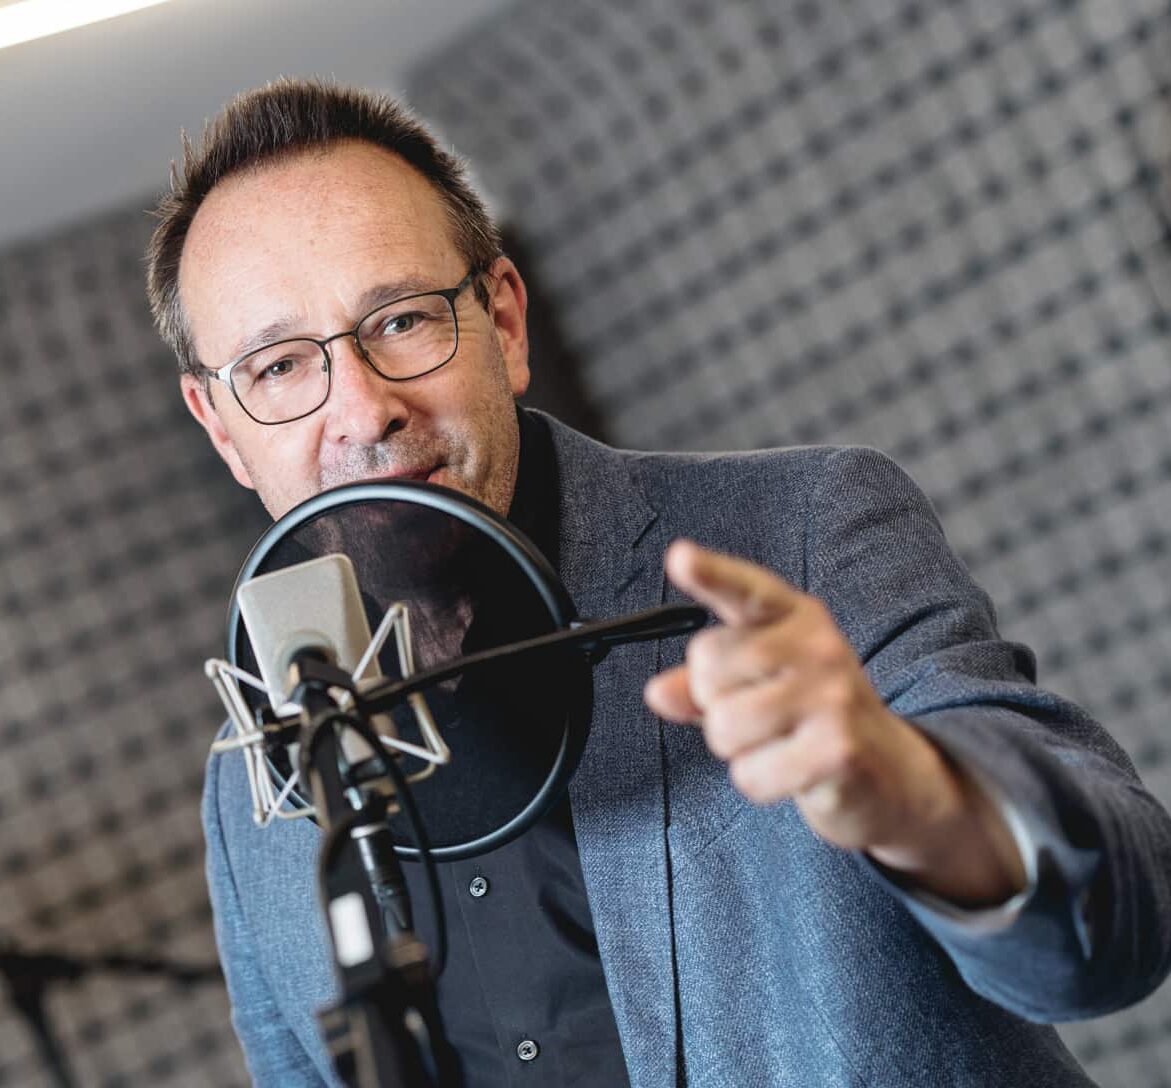 Robert Sprecher Dolmetscher Hörbücher Hörspiel Event Stimme mehrsprachig Schweizer Sprecheragentur